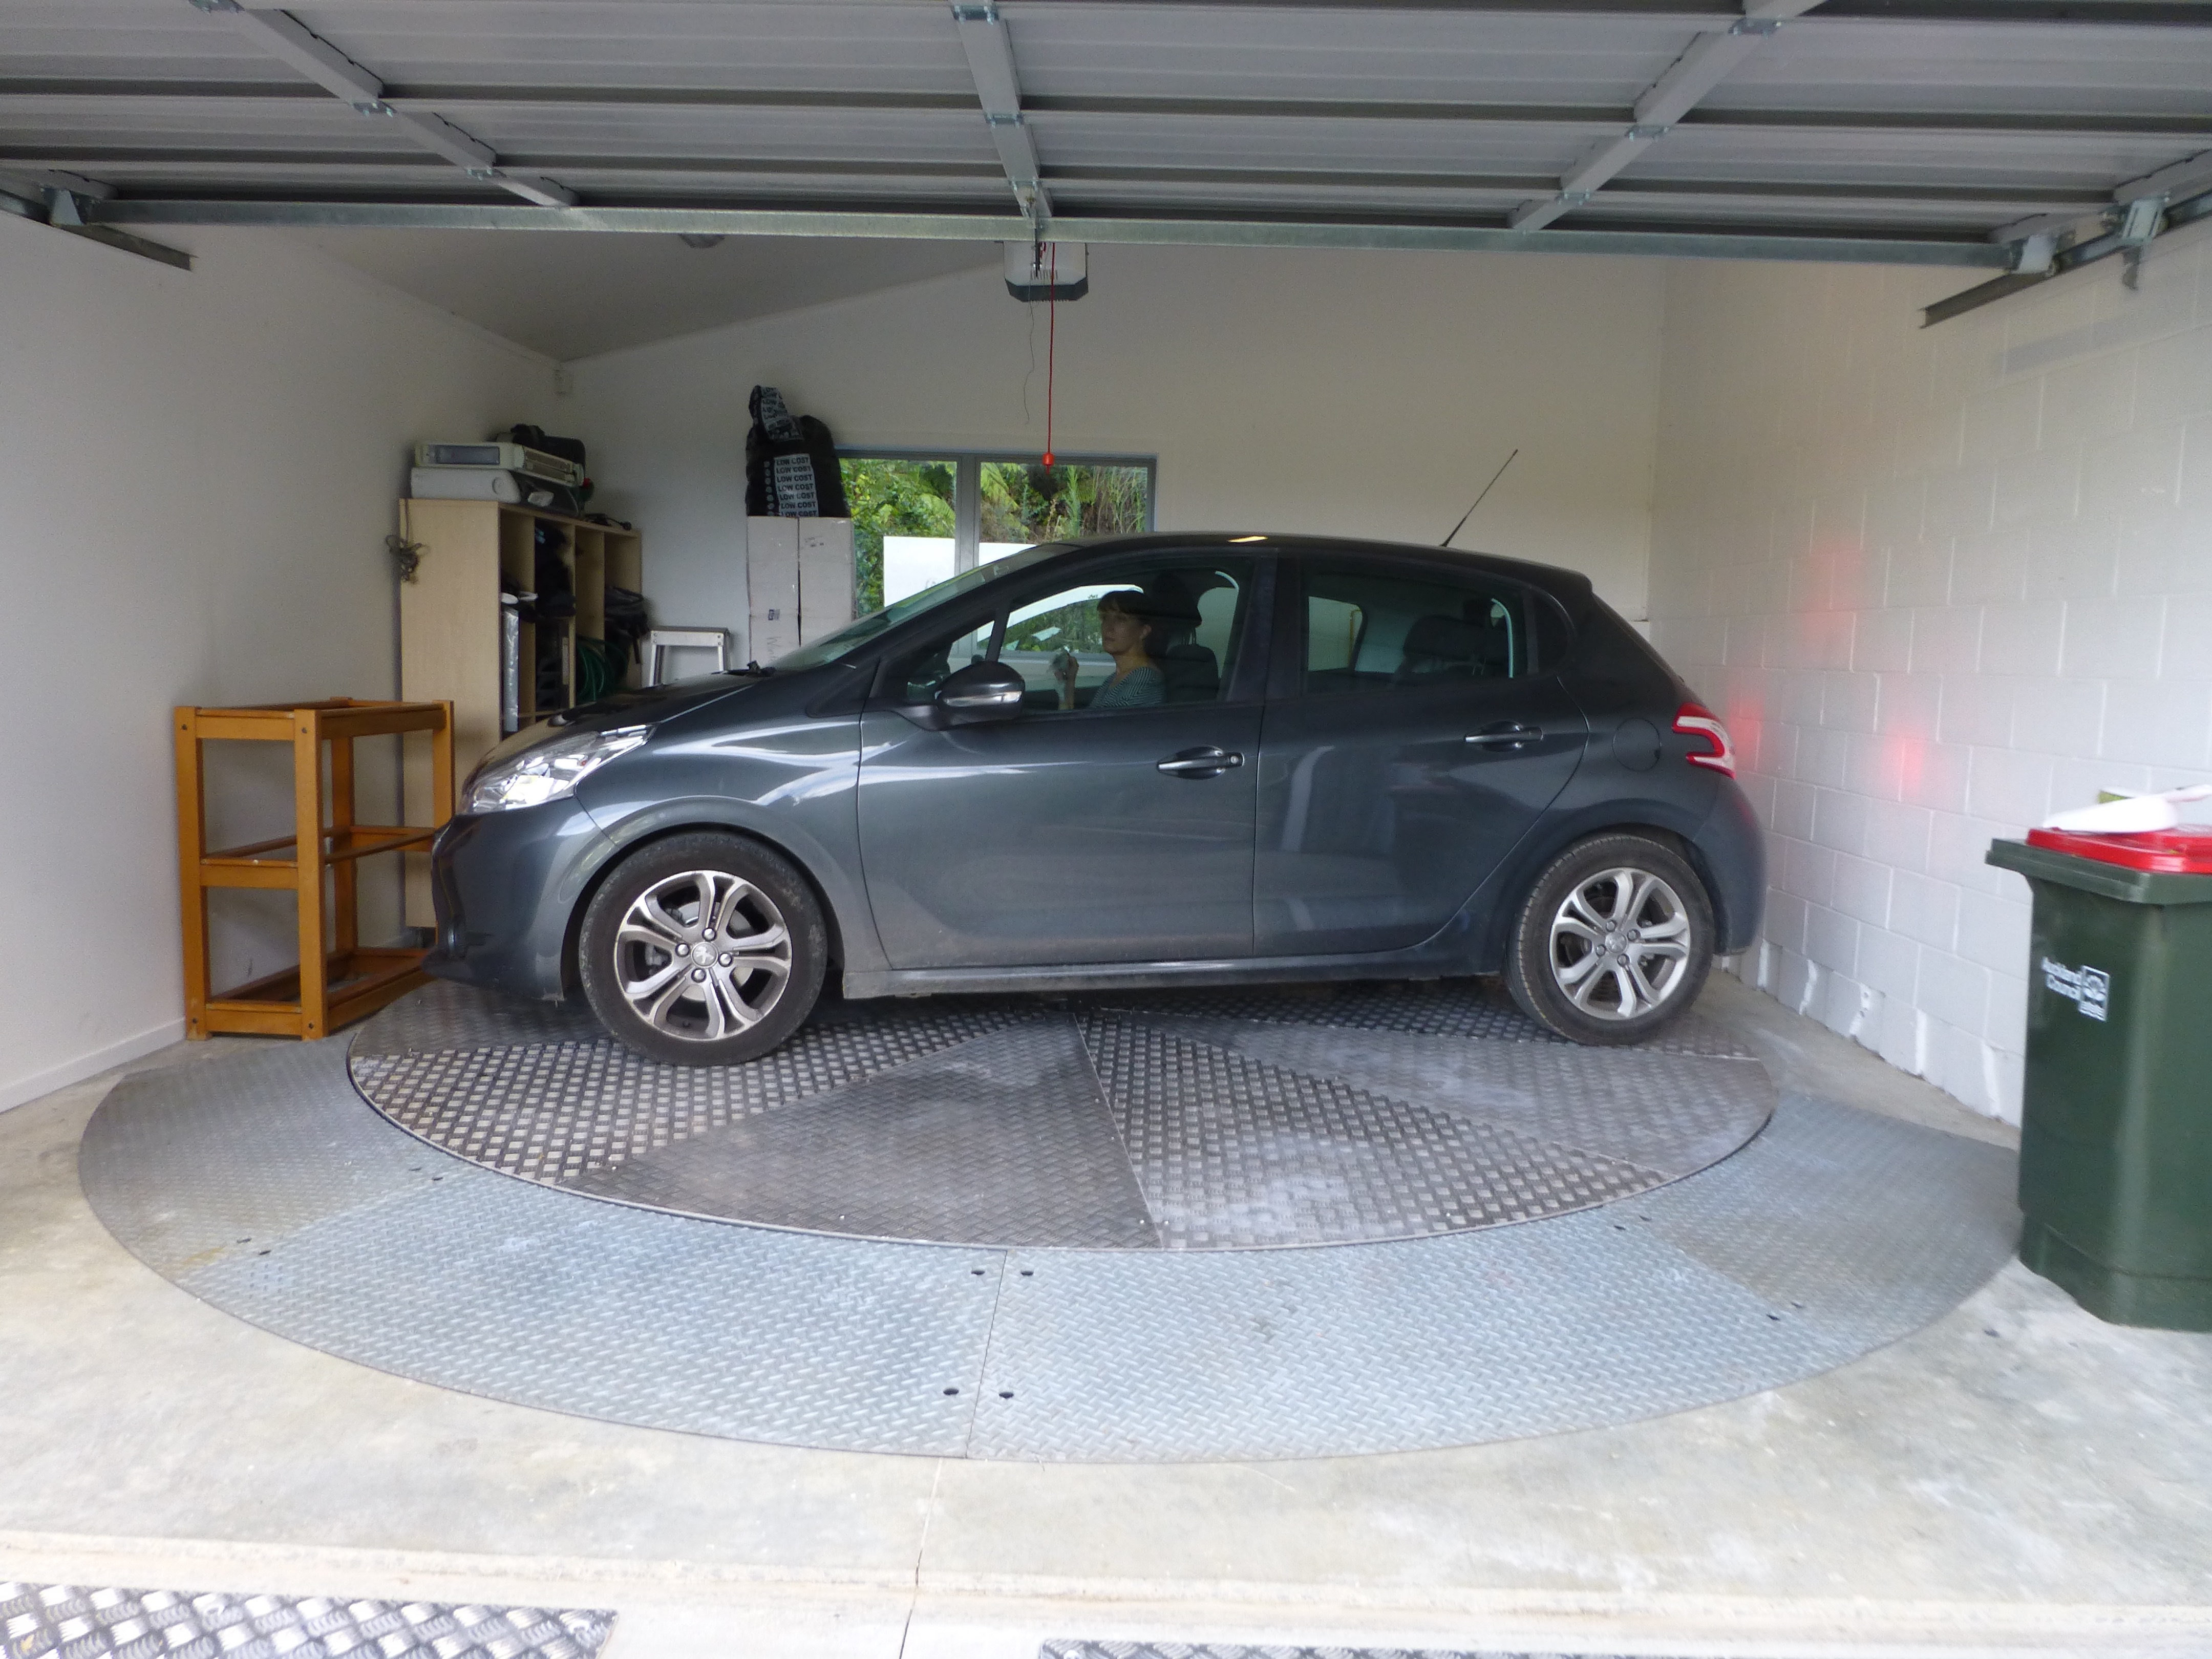 Surface mounted garage car turntable